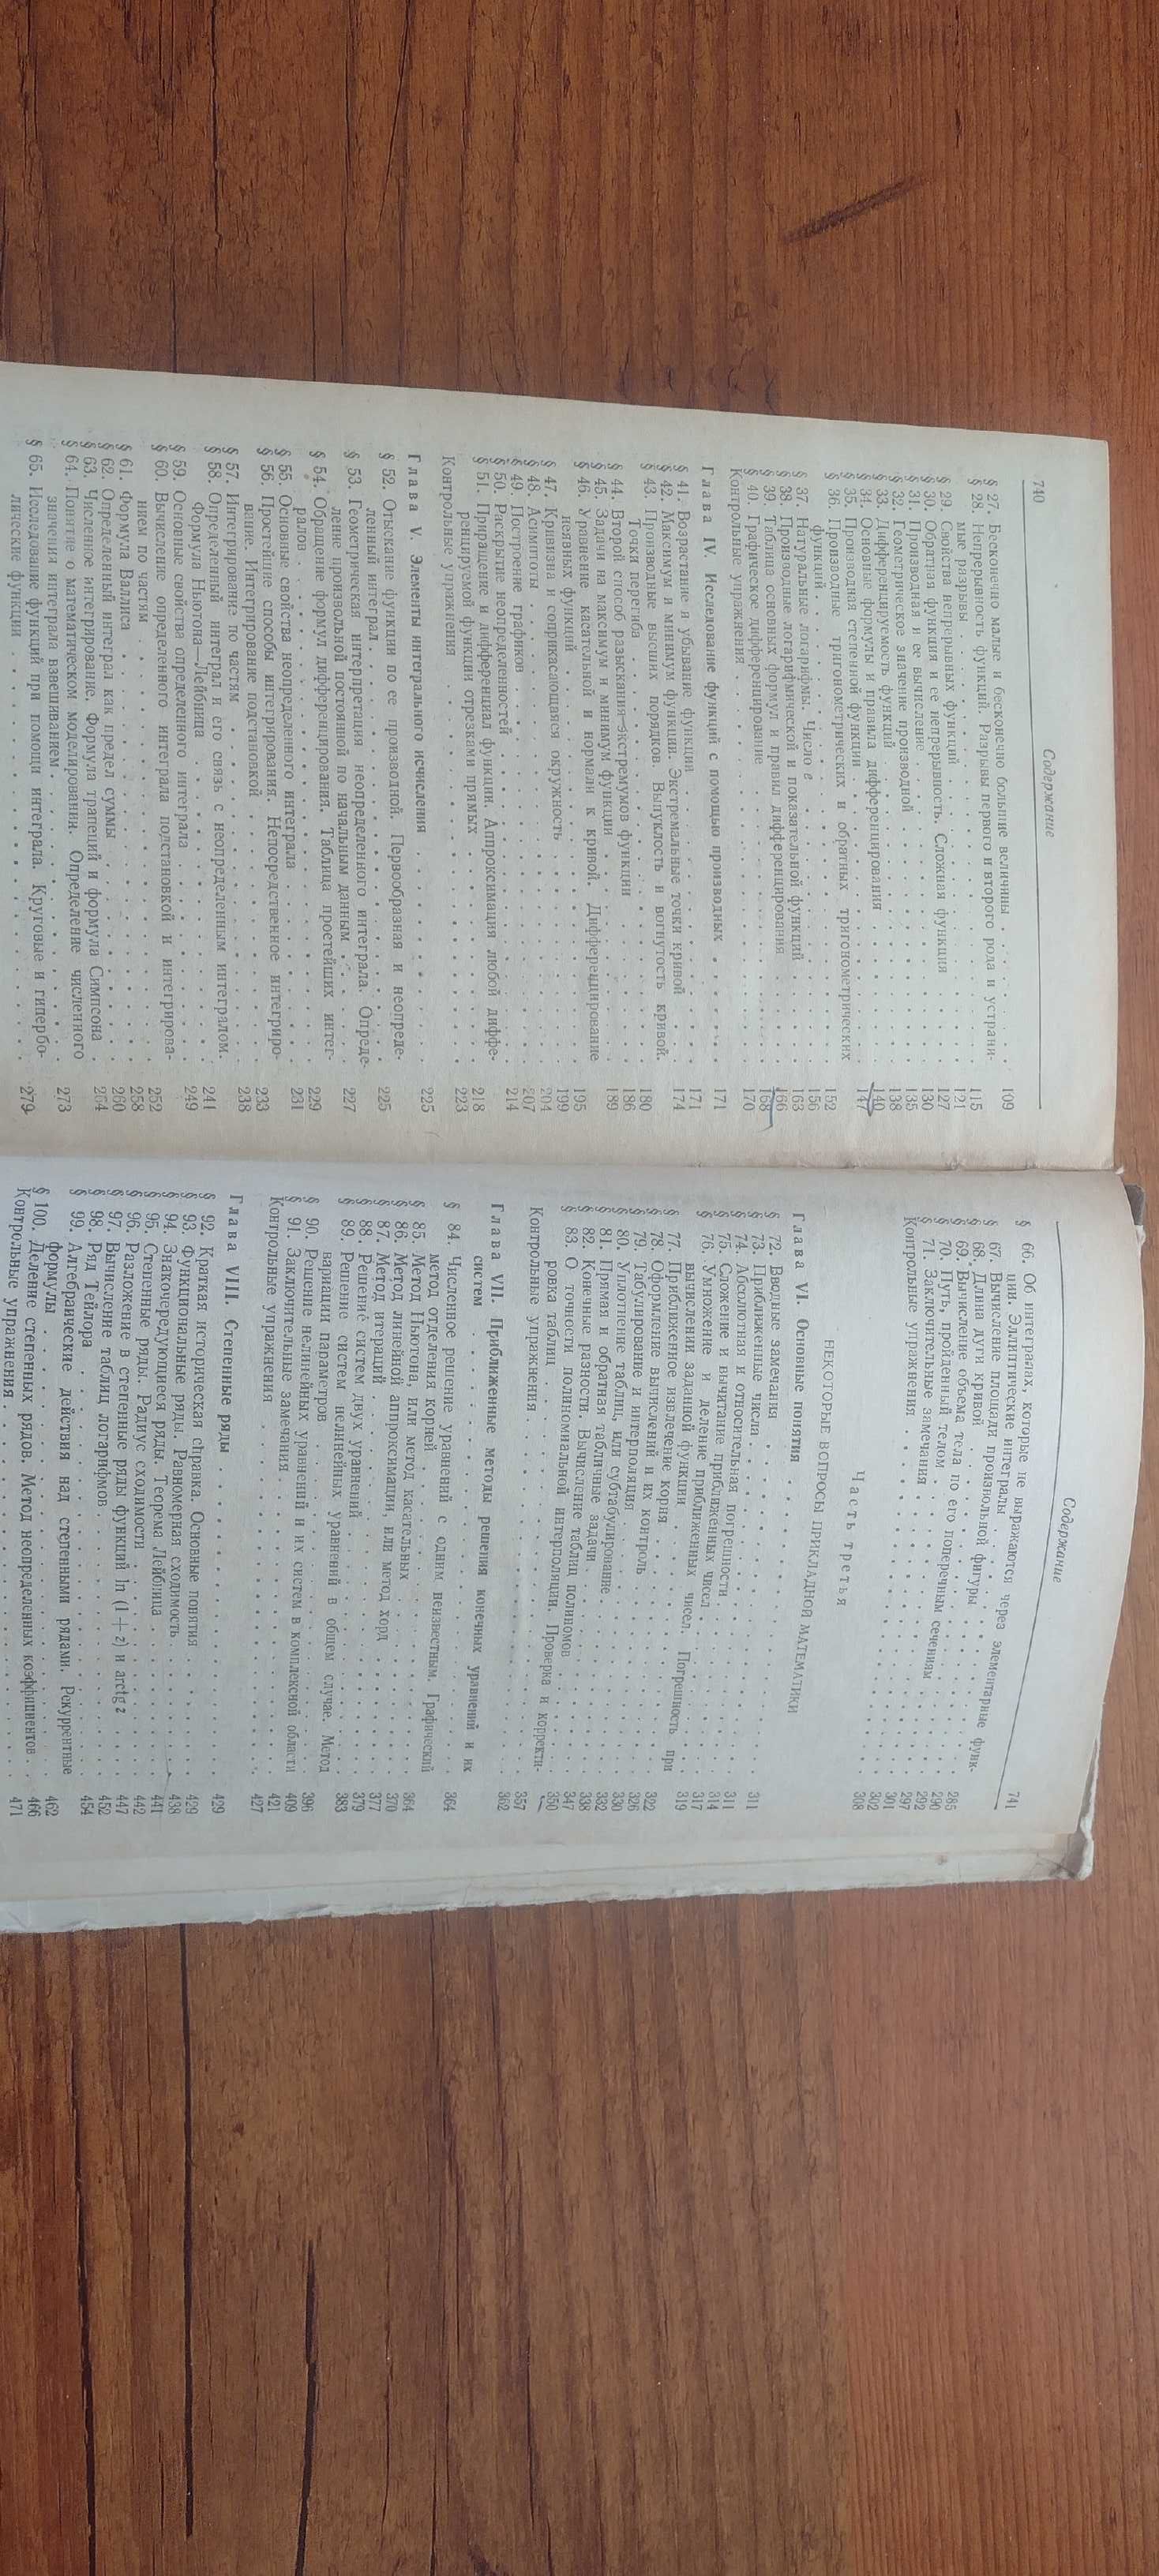 Фильчаков Справочник по высшей математике 1972